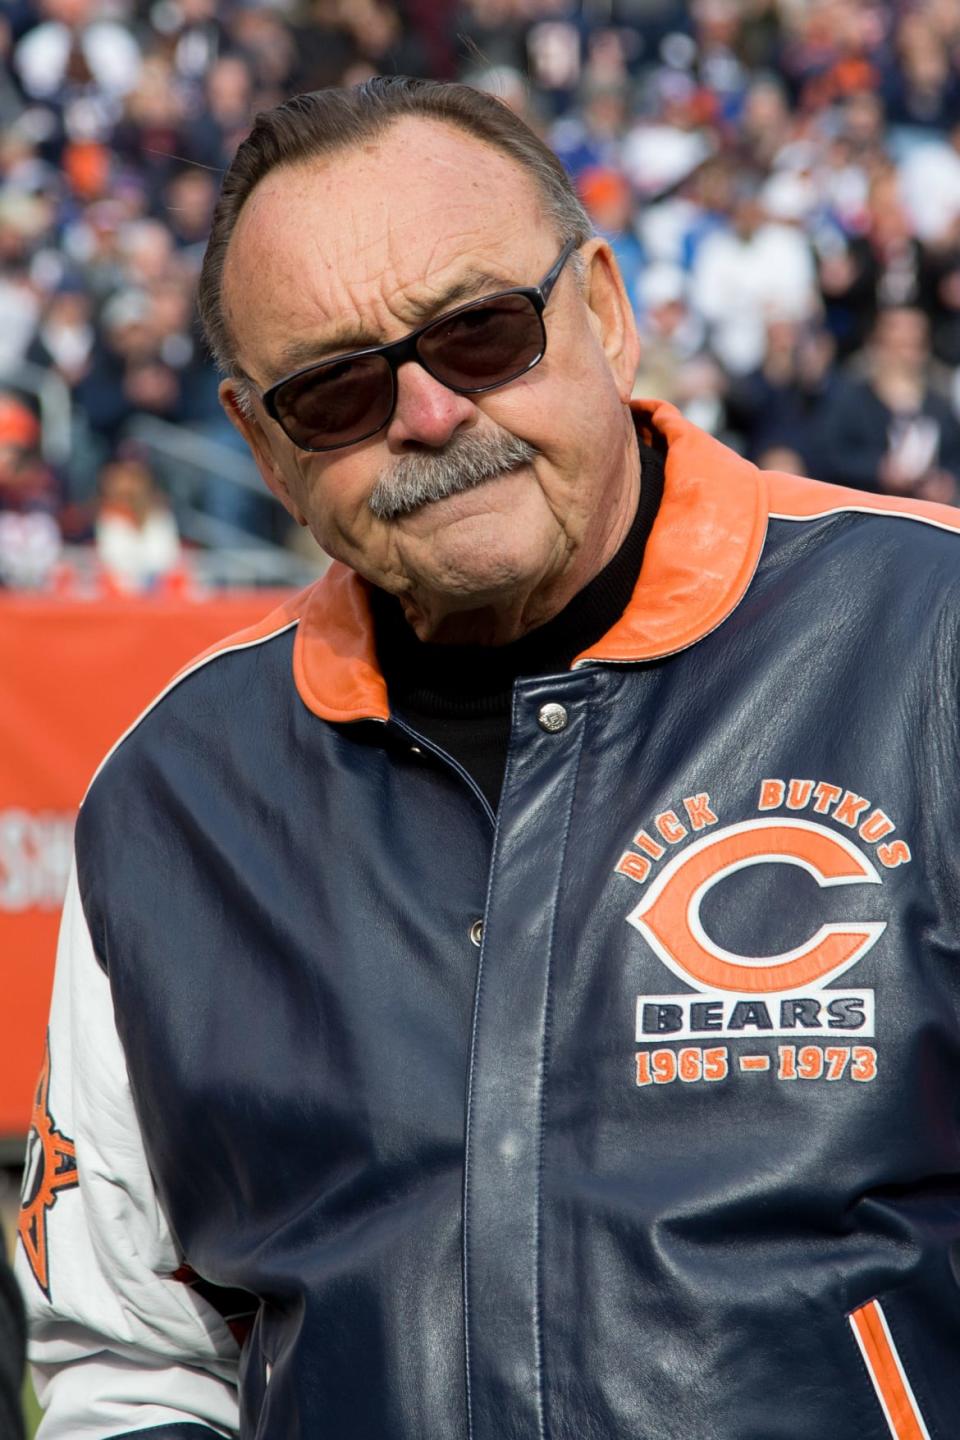 Chicago Bears former linebacker Dick Butkus.